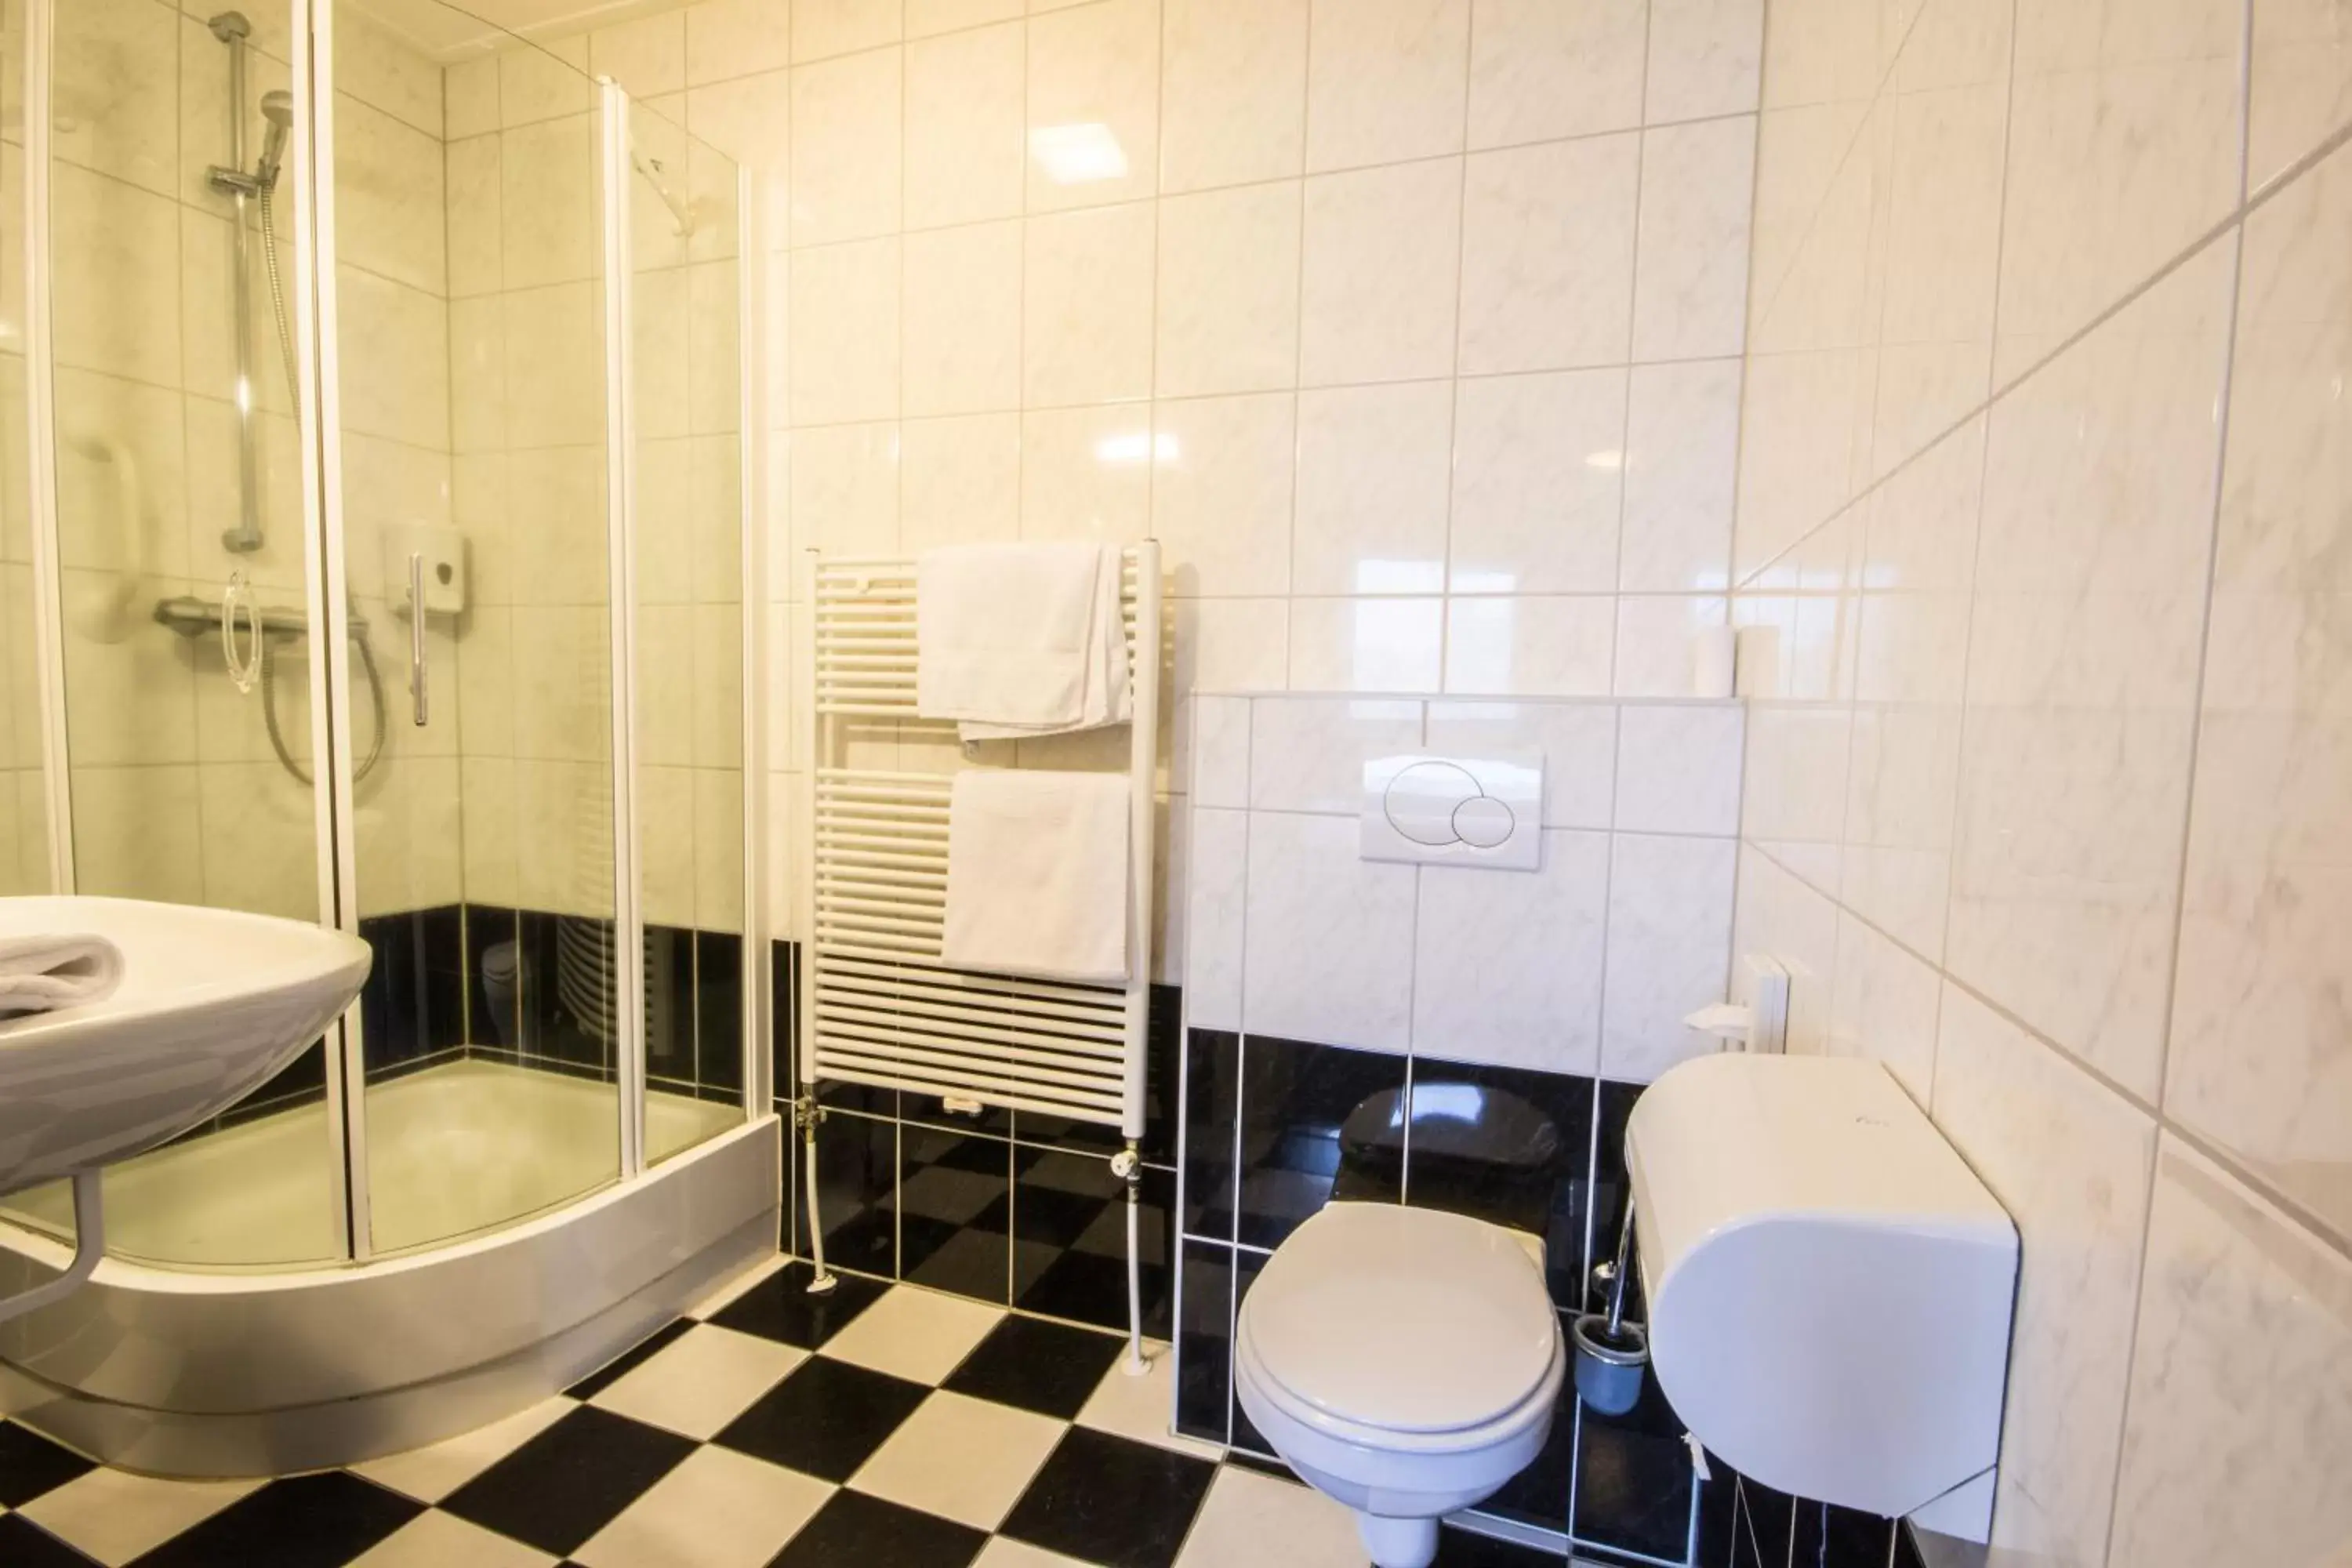 Toilet, Bathroom in De Stobbe hotel & suites